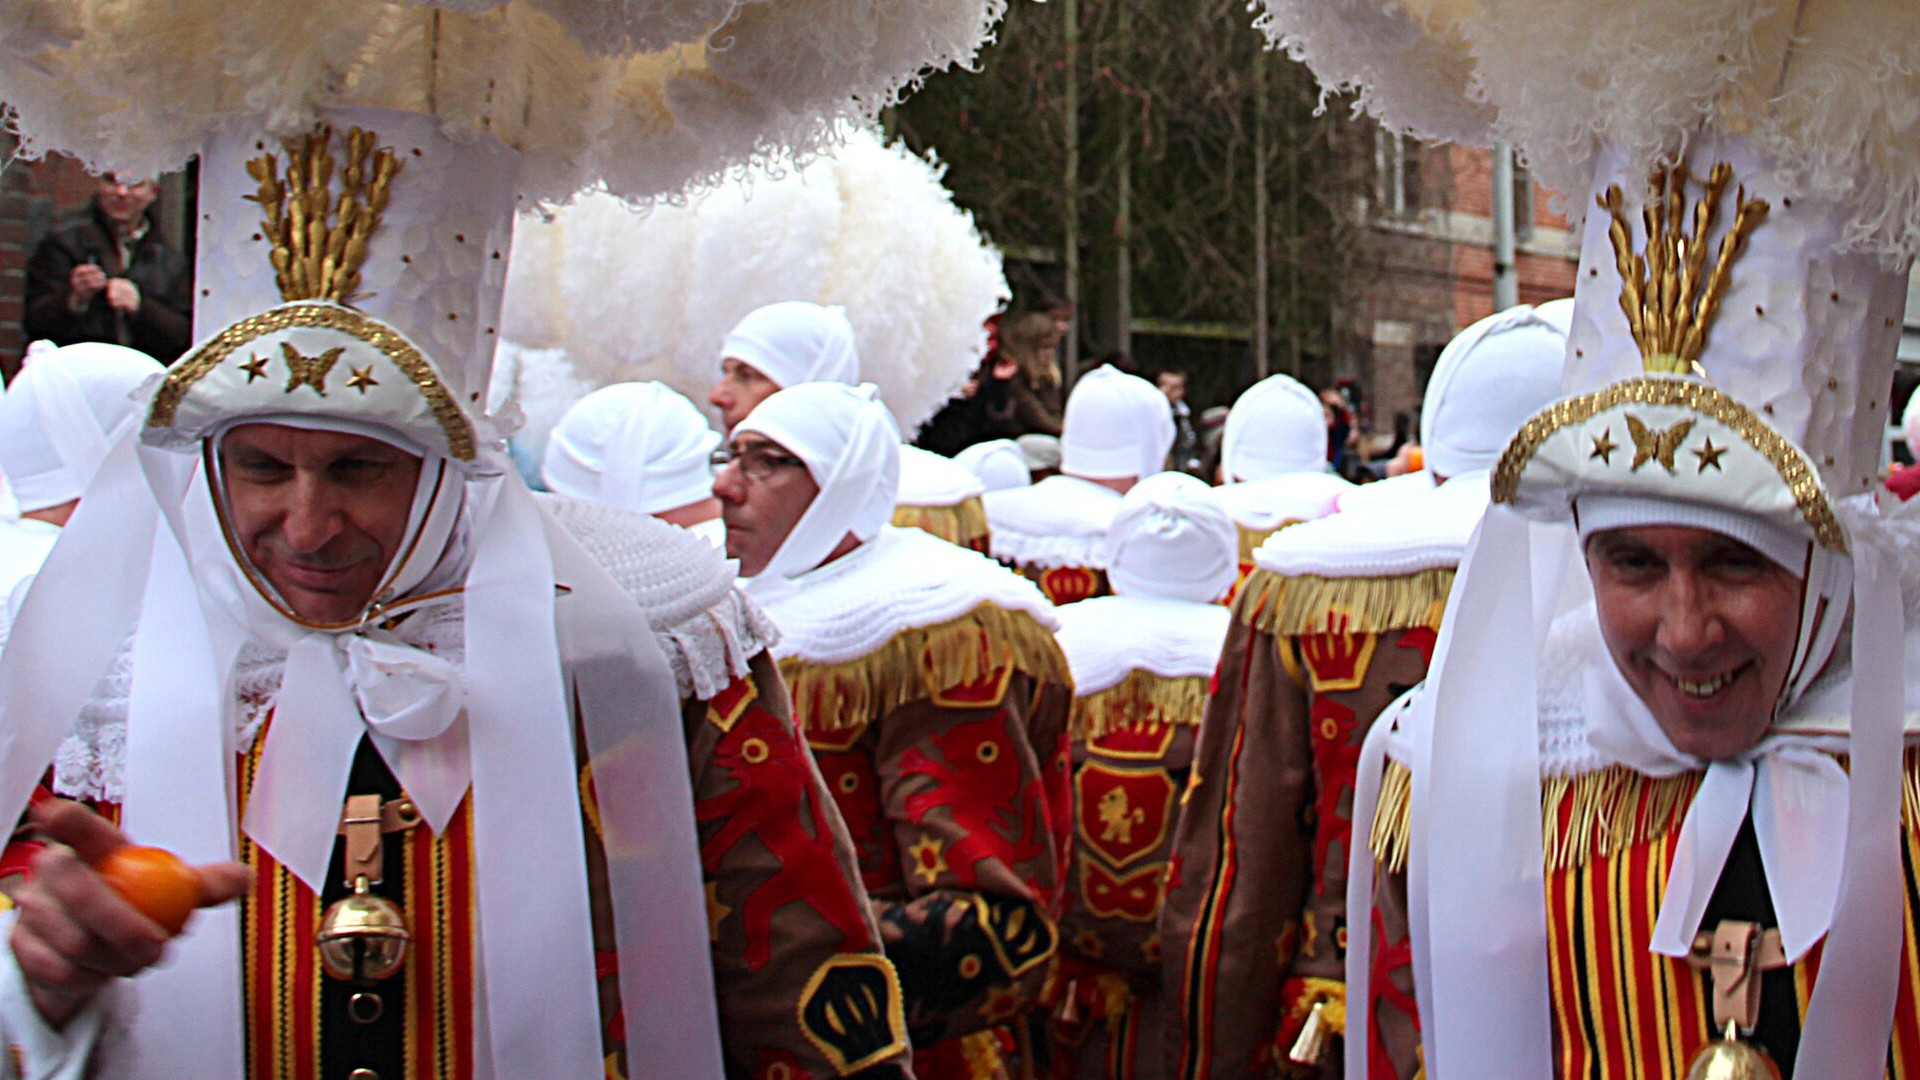 Carnevale di Binche: Tradizione e Allegria nel Cuore del Belgio